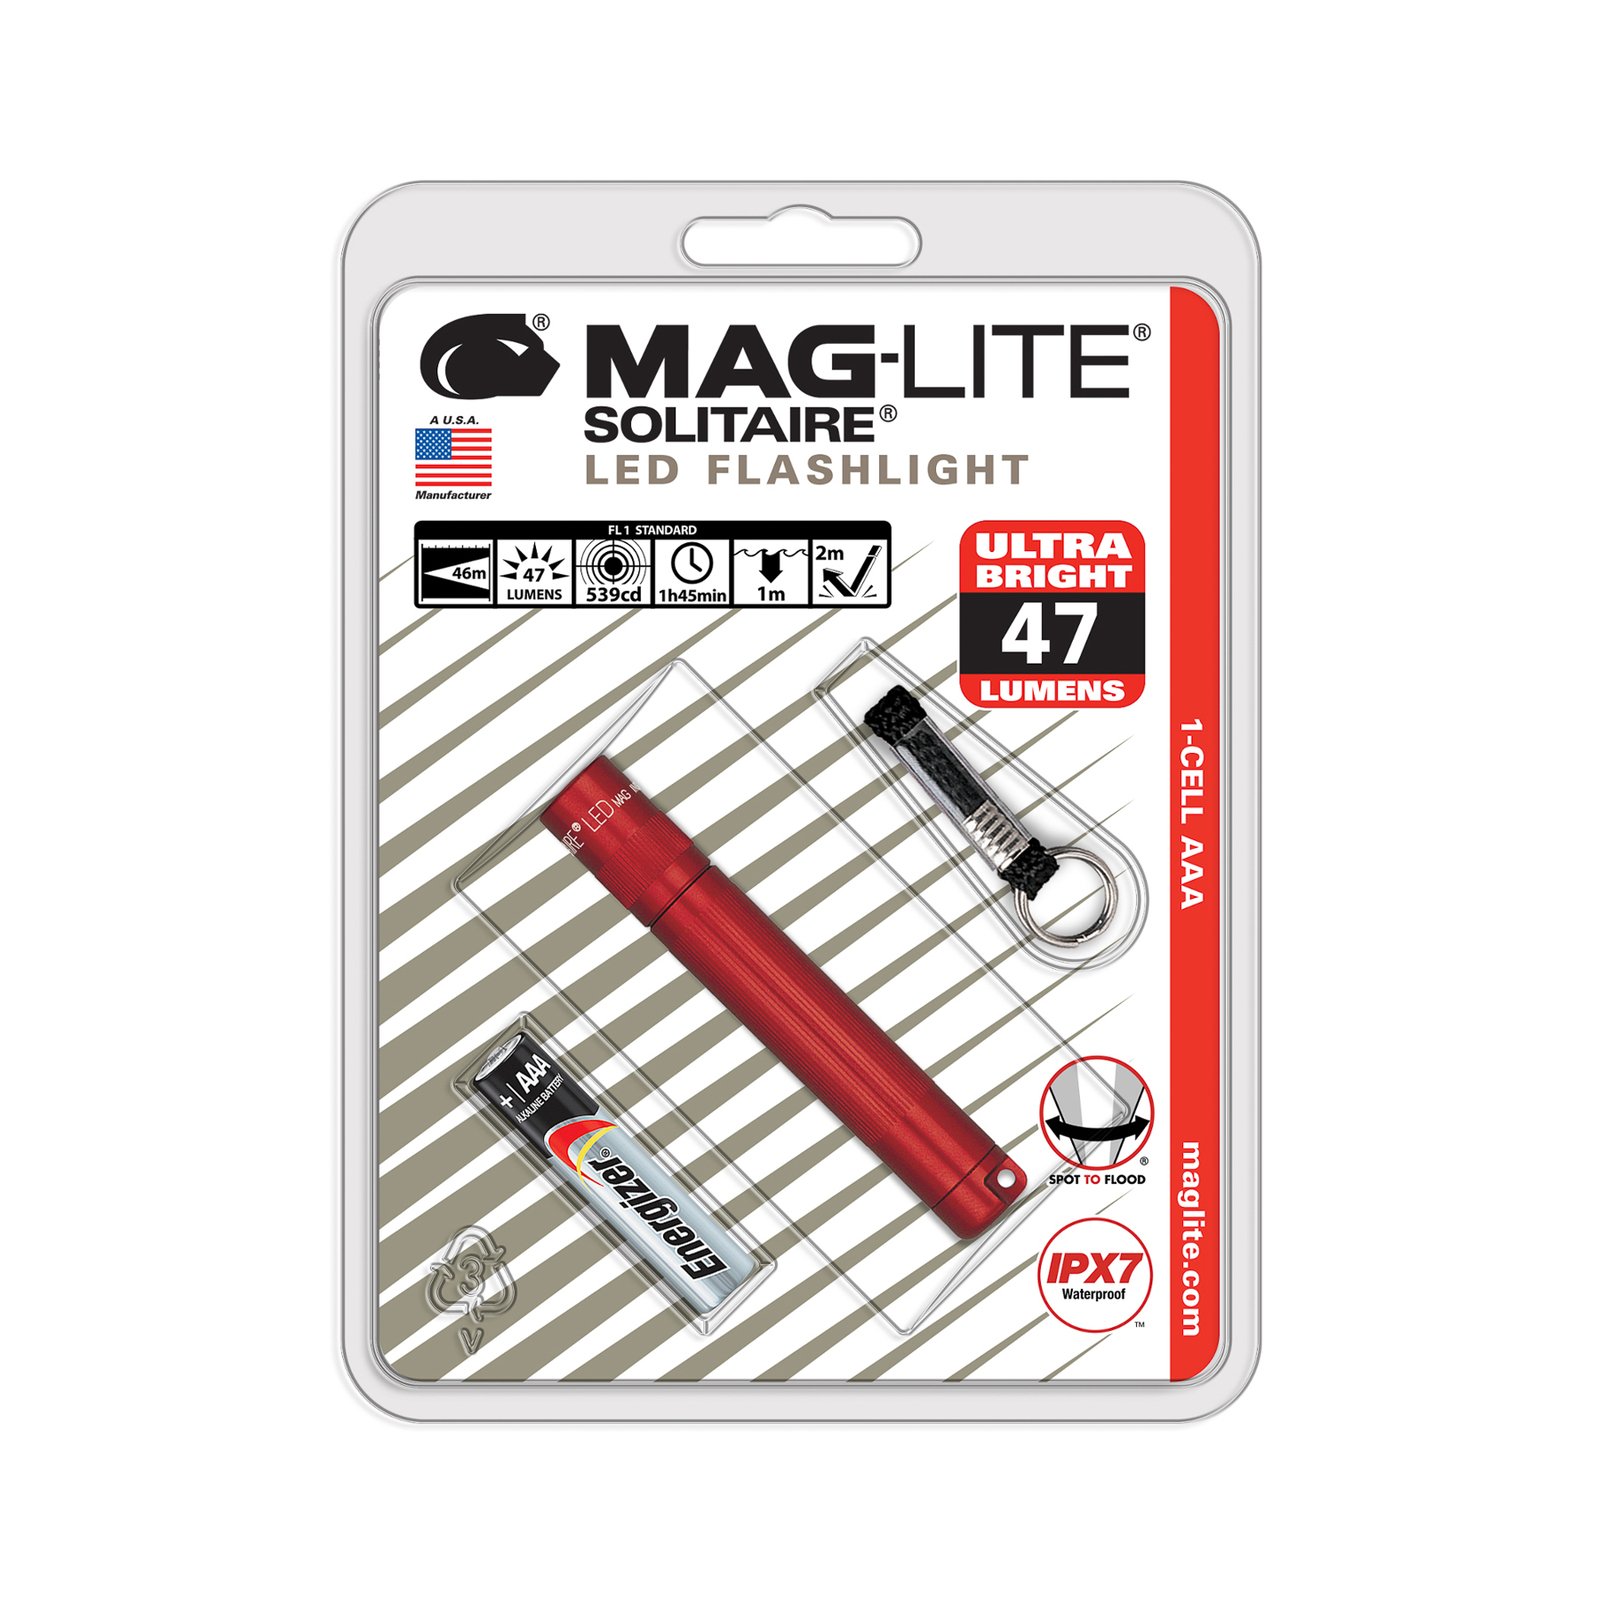 Svítilna Maglite LED Solitaire, 1 článek AAA, červená